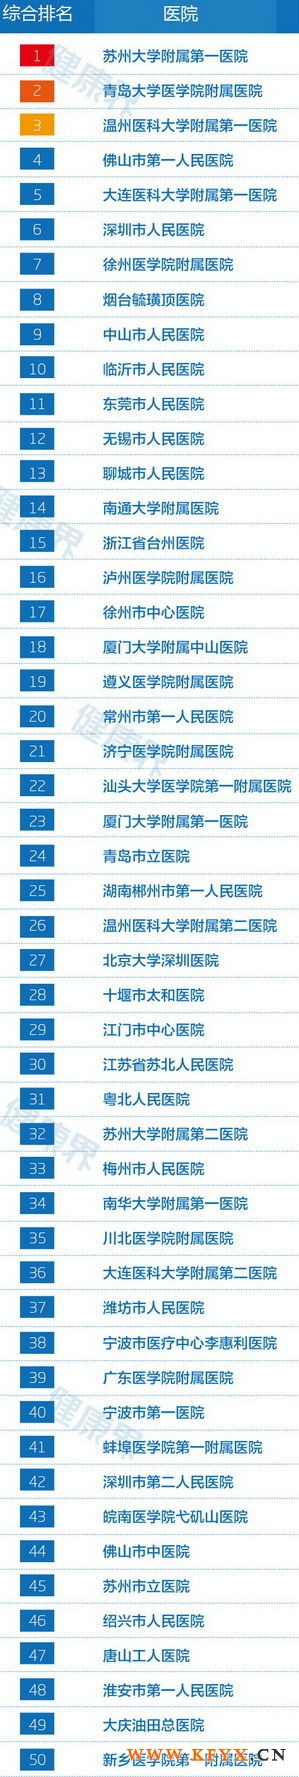 2013中国地级市医院竞争力百强排行榜